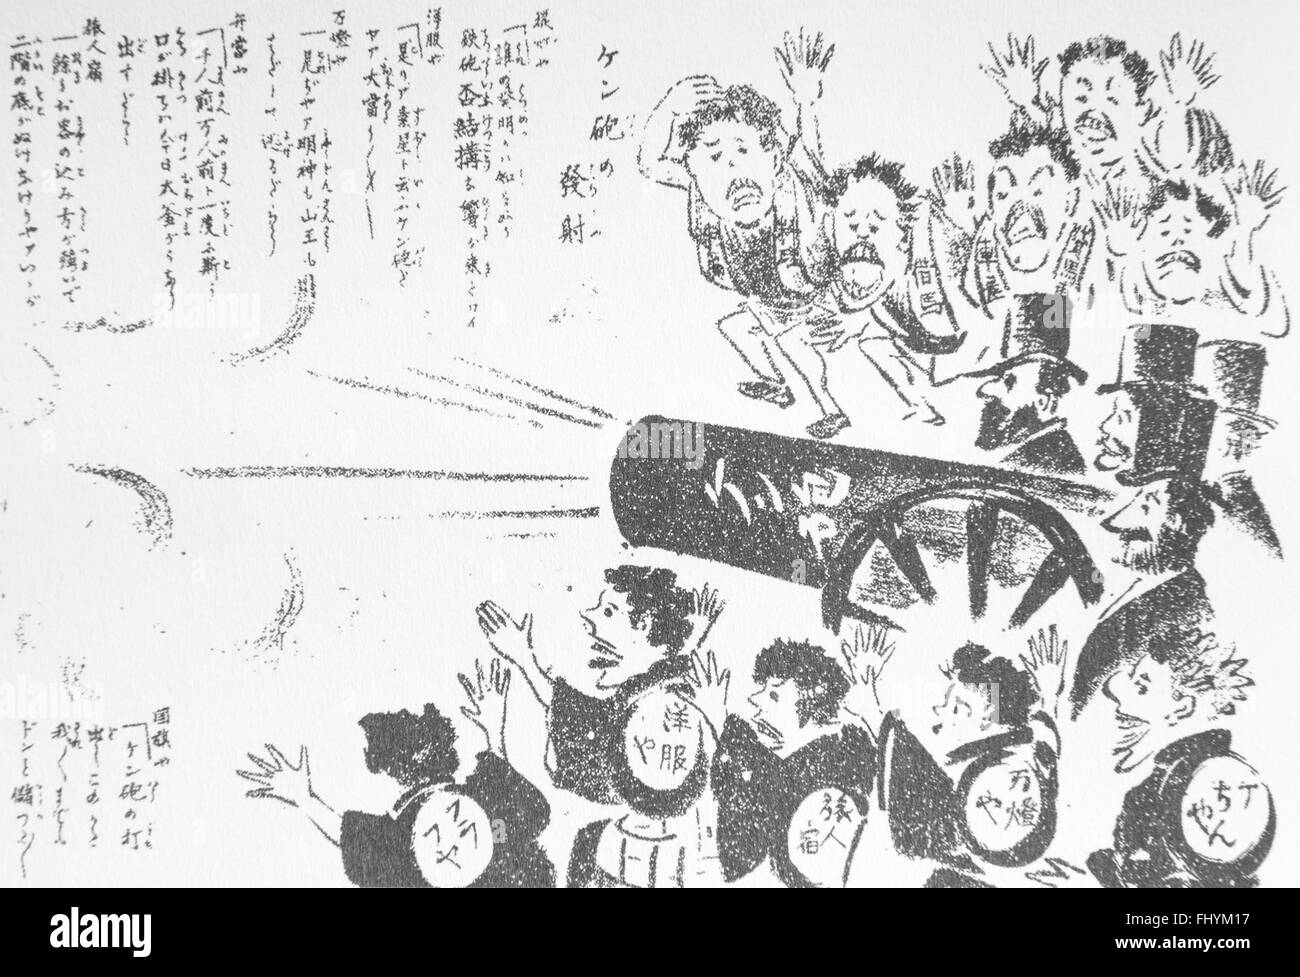 Abschuss von Kenpo (die Verfassung des Reiches von Japan). Japanische feierte Ausgabe der Verfassung. Es war asiatischen erste Verfassung. Veröffentlicht in Marumaruchinbun Februar 16,1889. Stockfoto